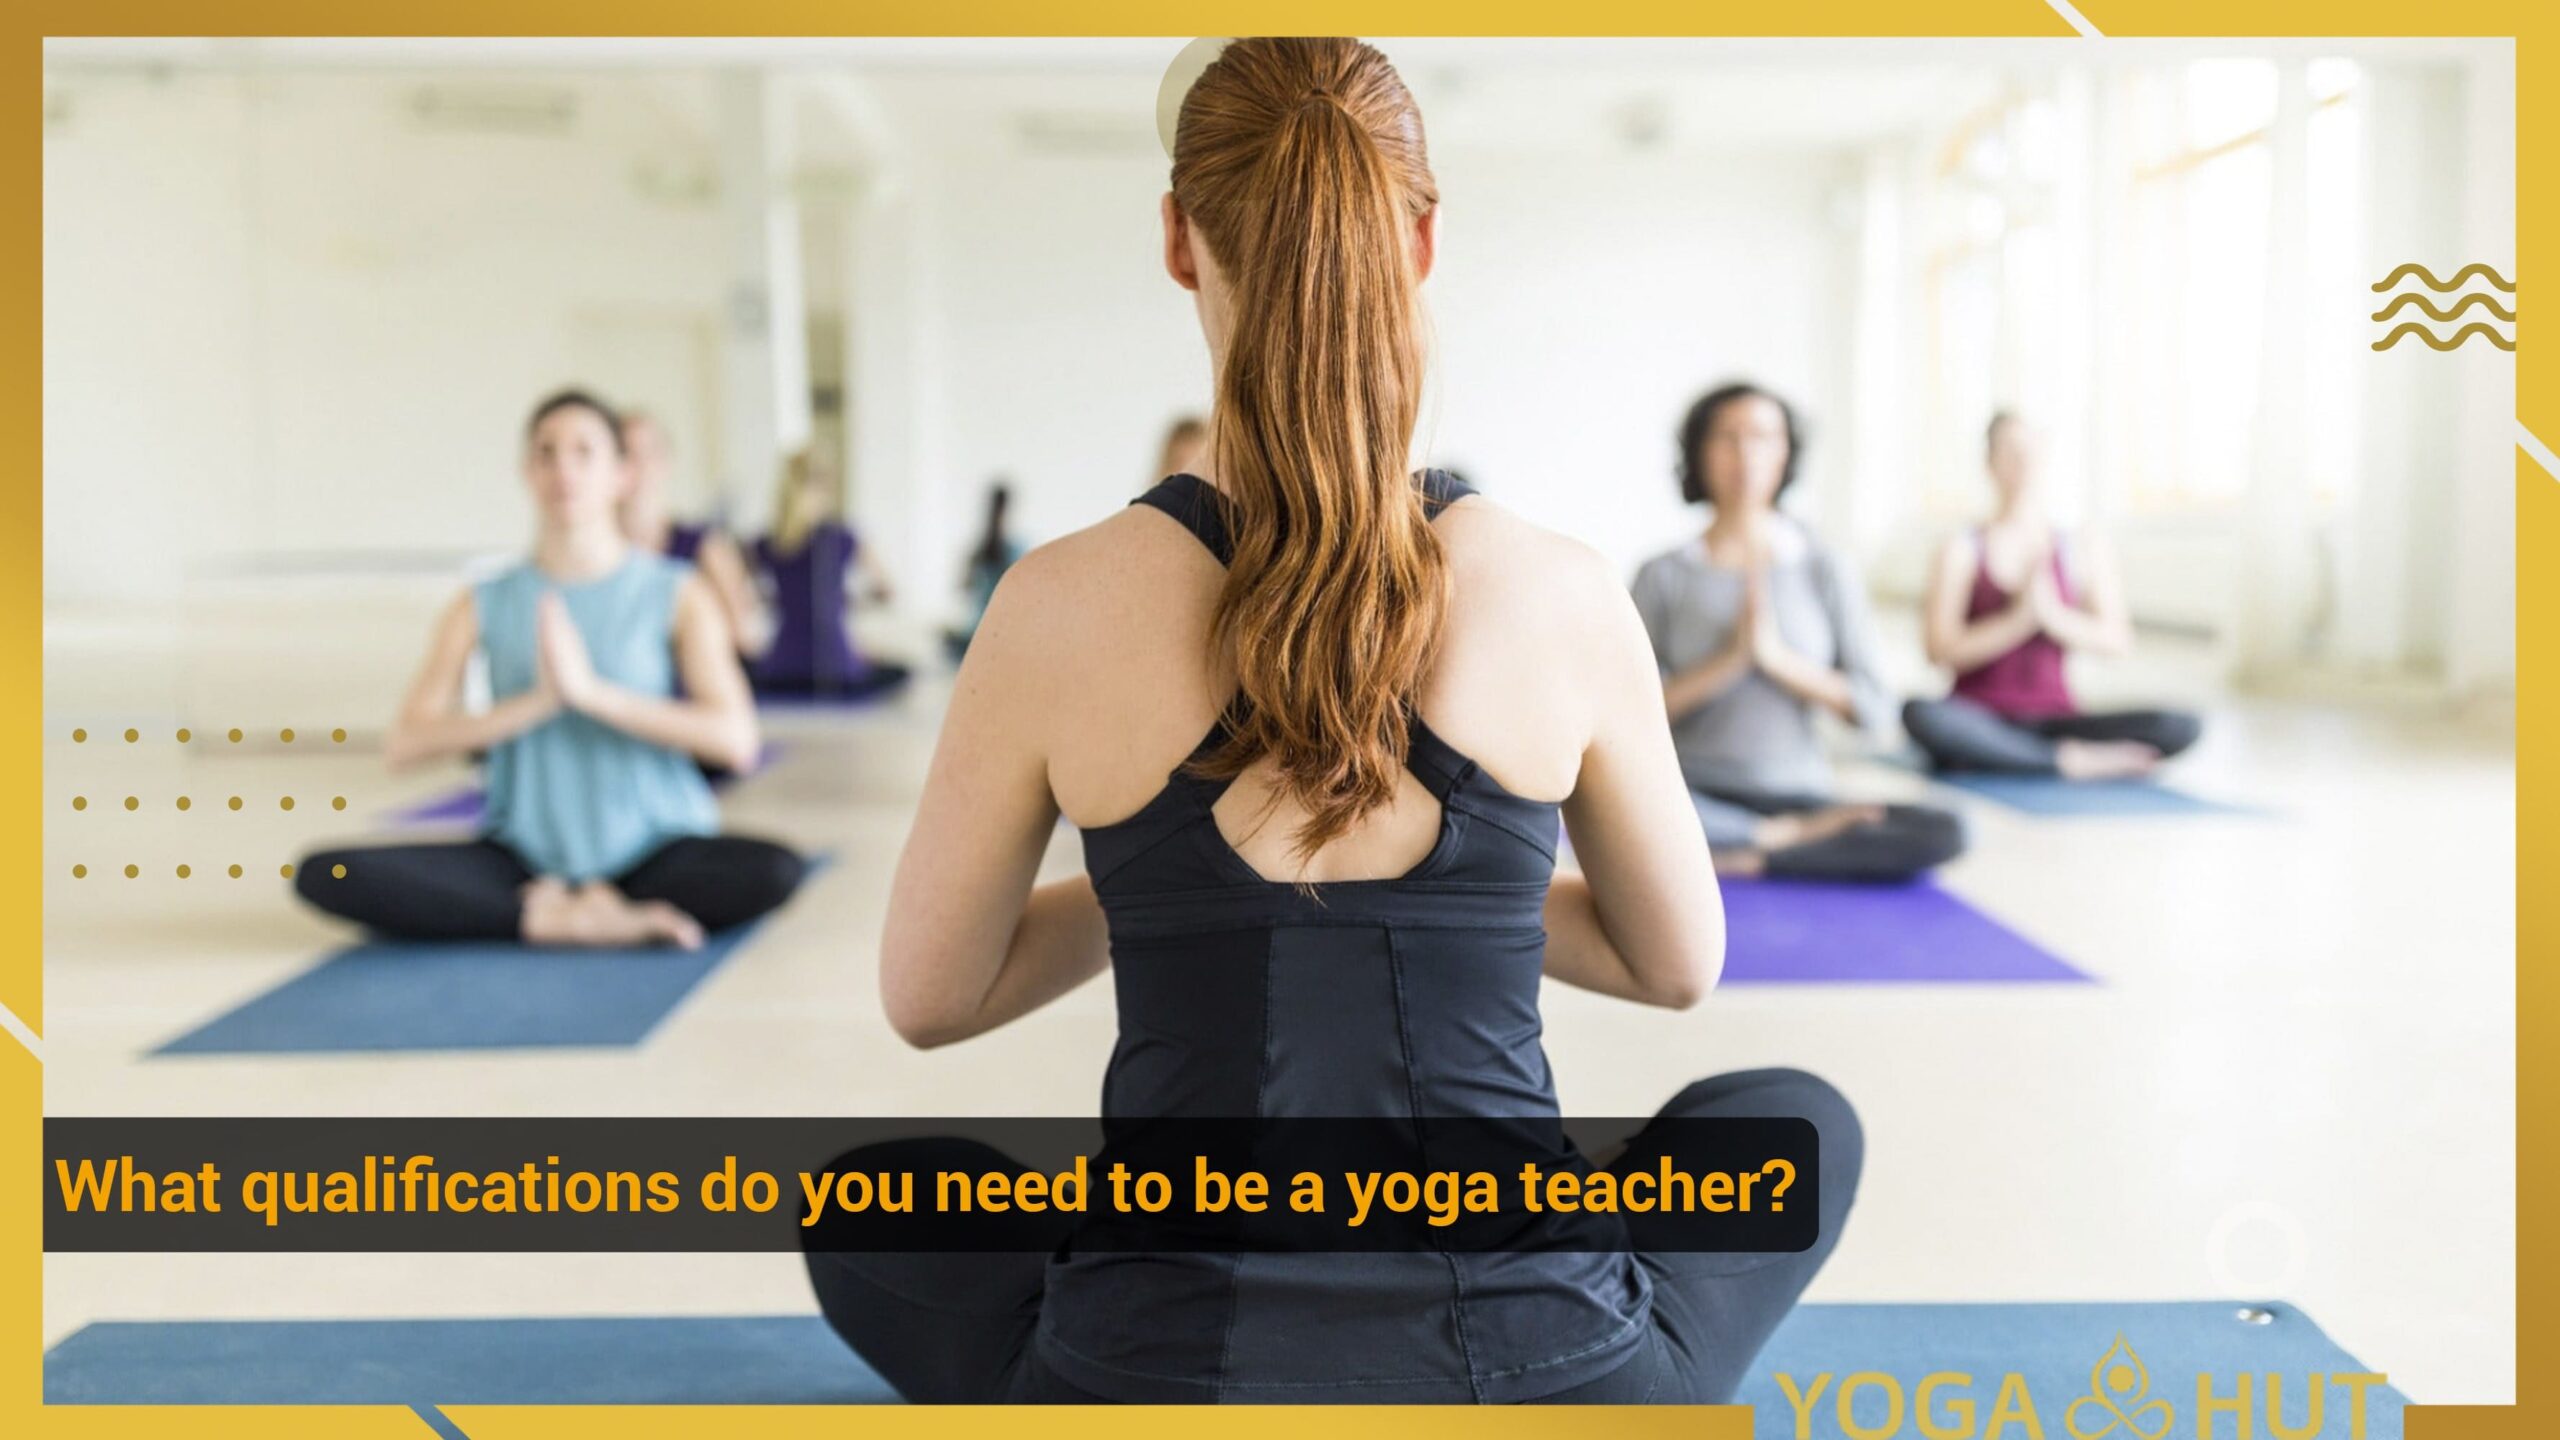 A yoga teacher